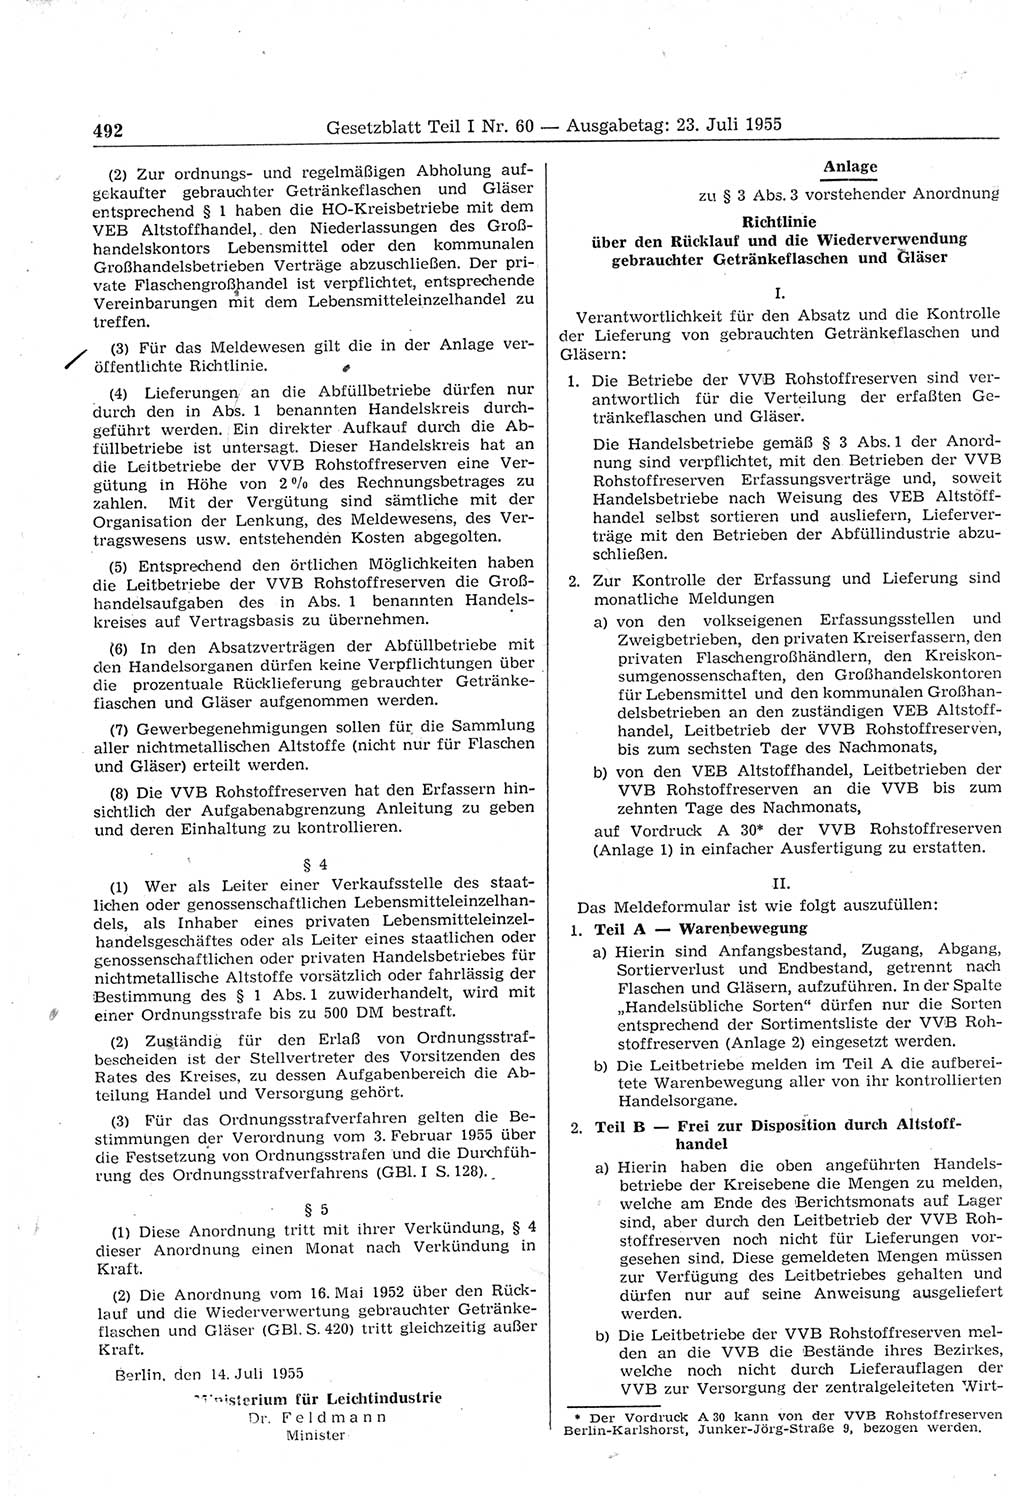 Gesetzblatt (GBl.) der Deutschen Demokratischen Republik (DDR) Teil Ⅰ 1955, Seite 492 (GBl. DDR Ⅰ 1955, S. 492)